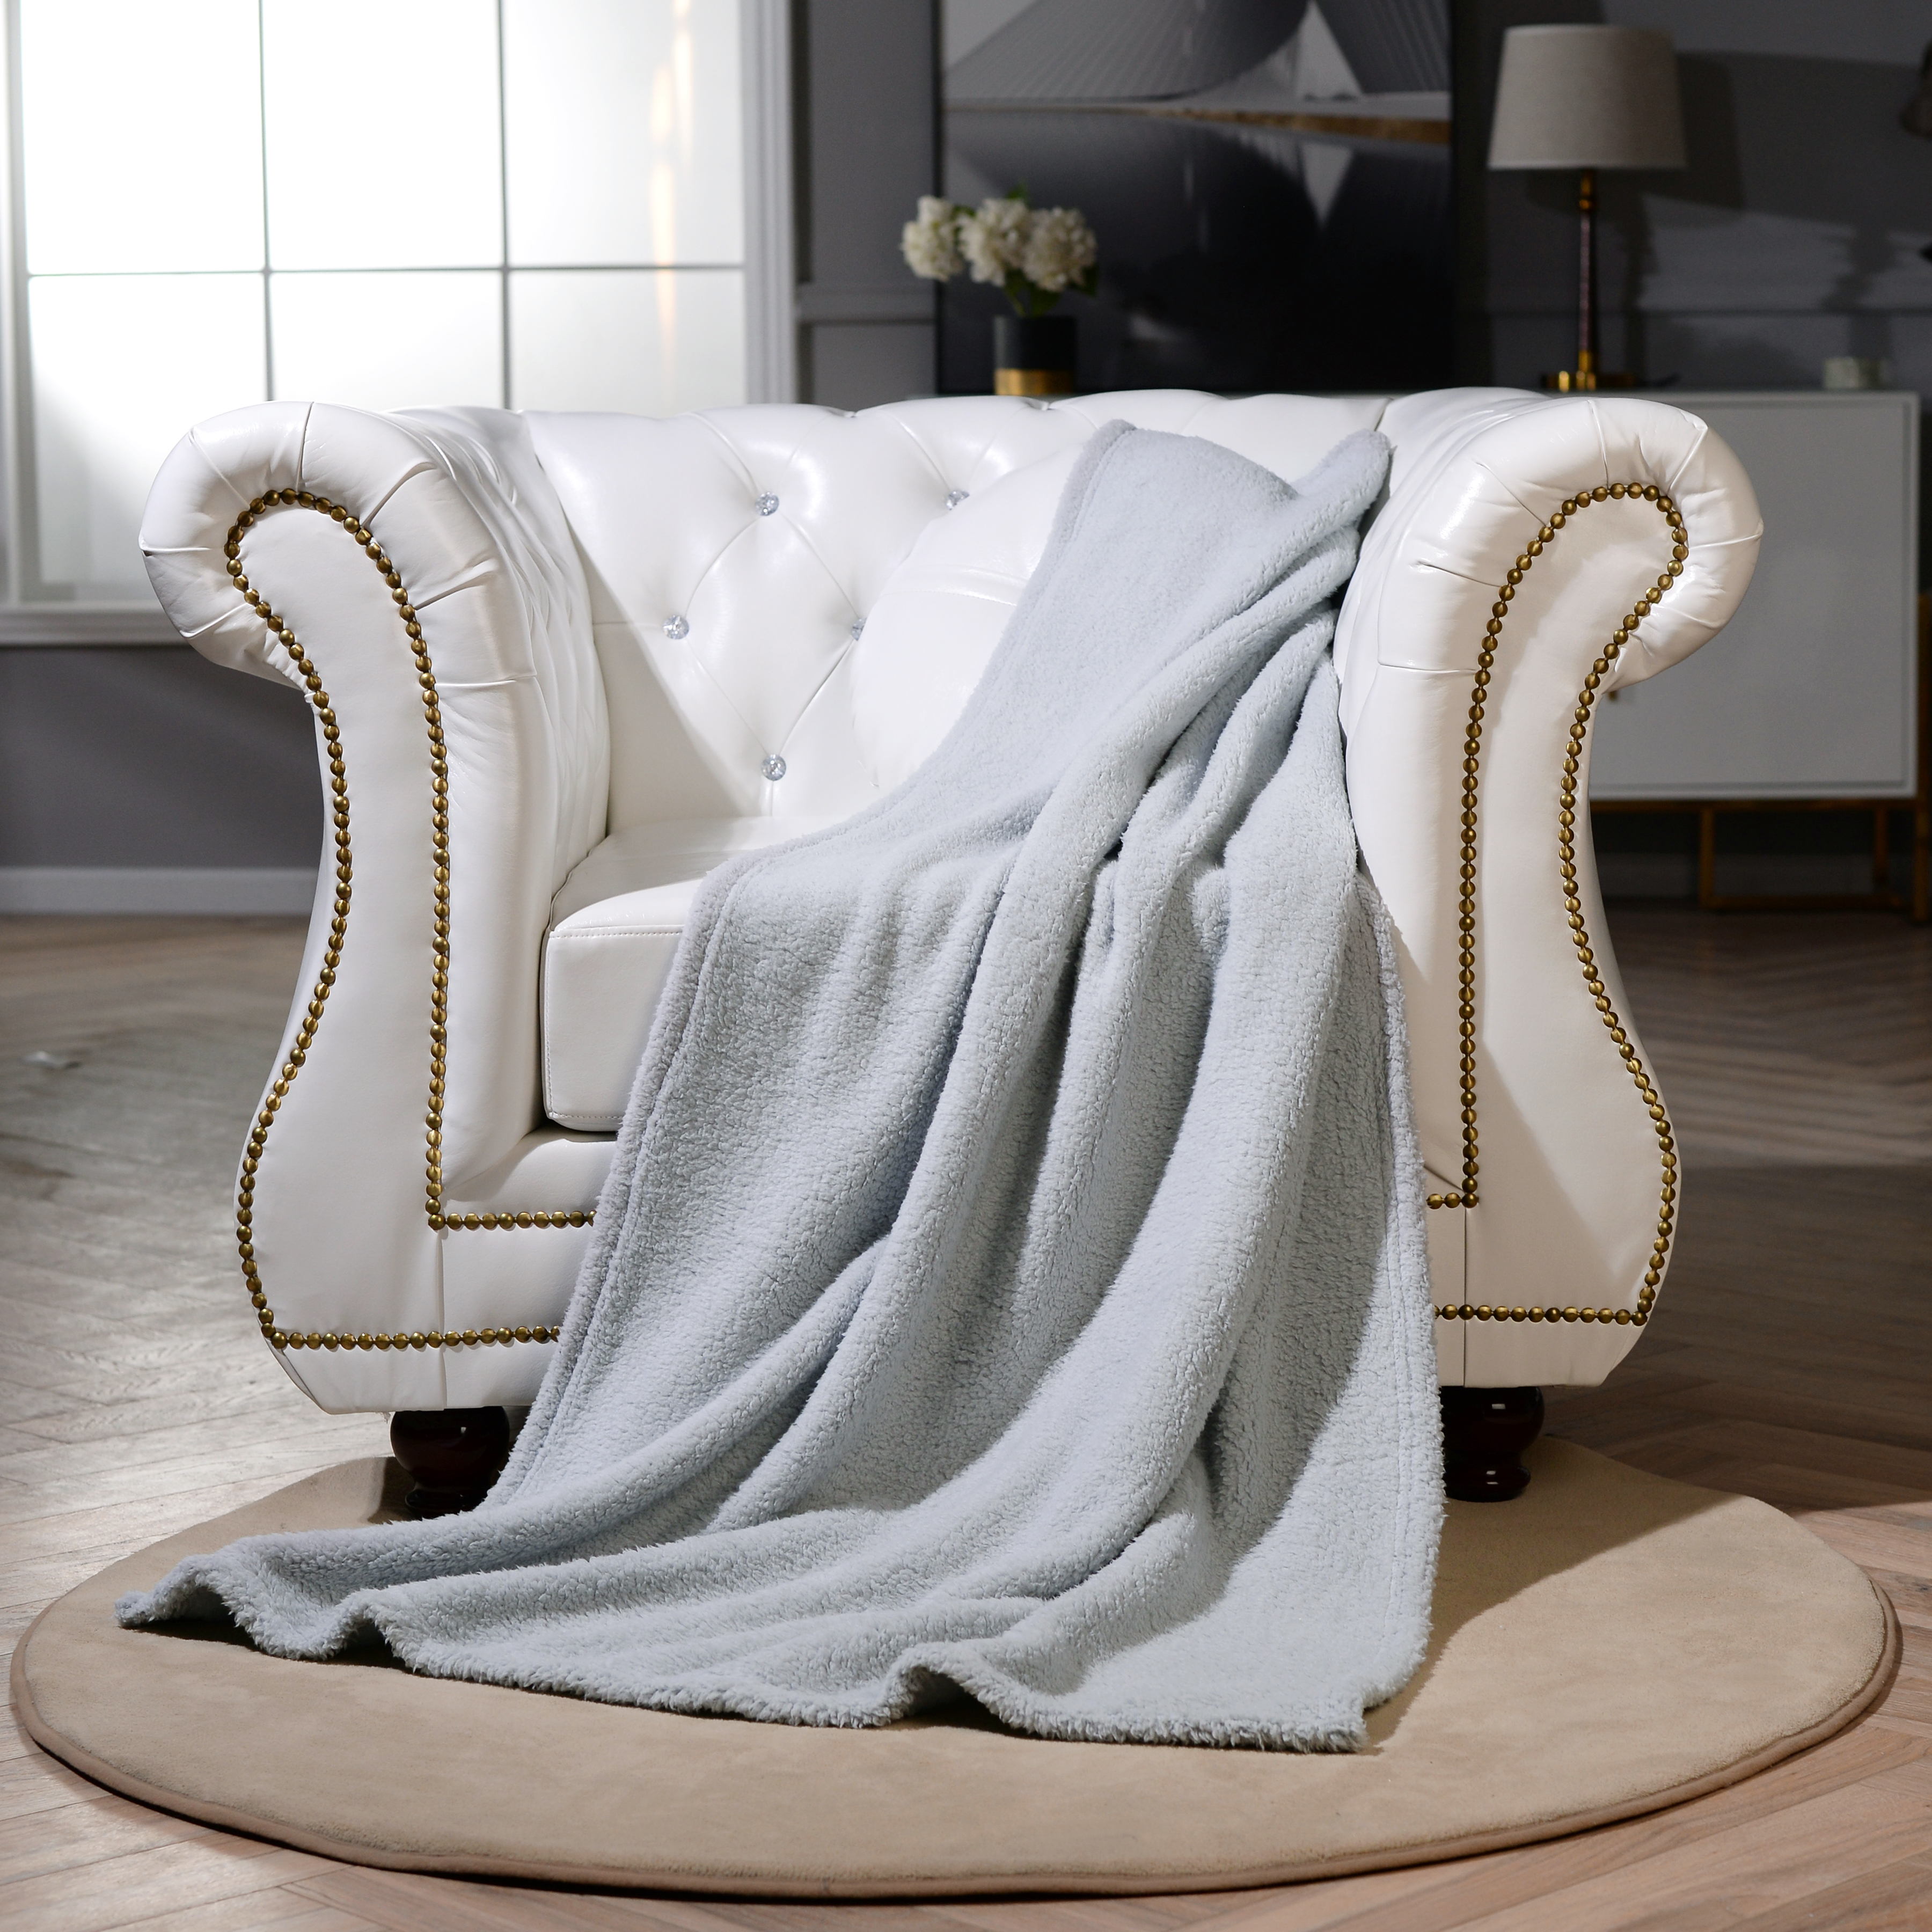 Slate Grey Teddy Fleece Throw /Blanket  Luxury Soft Double Warm Large 150x200cm 